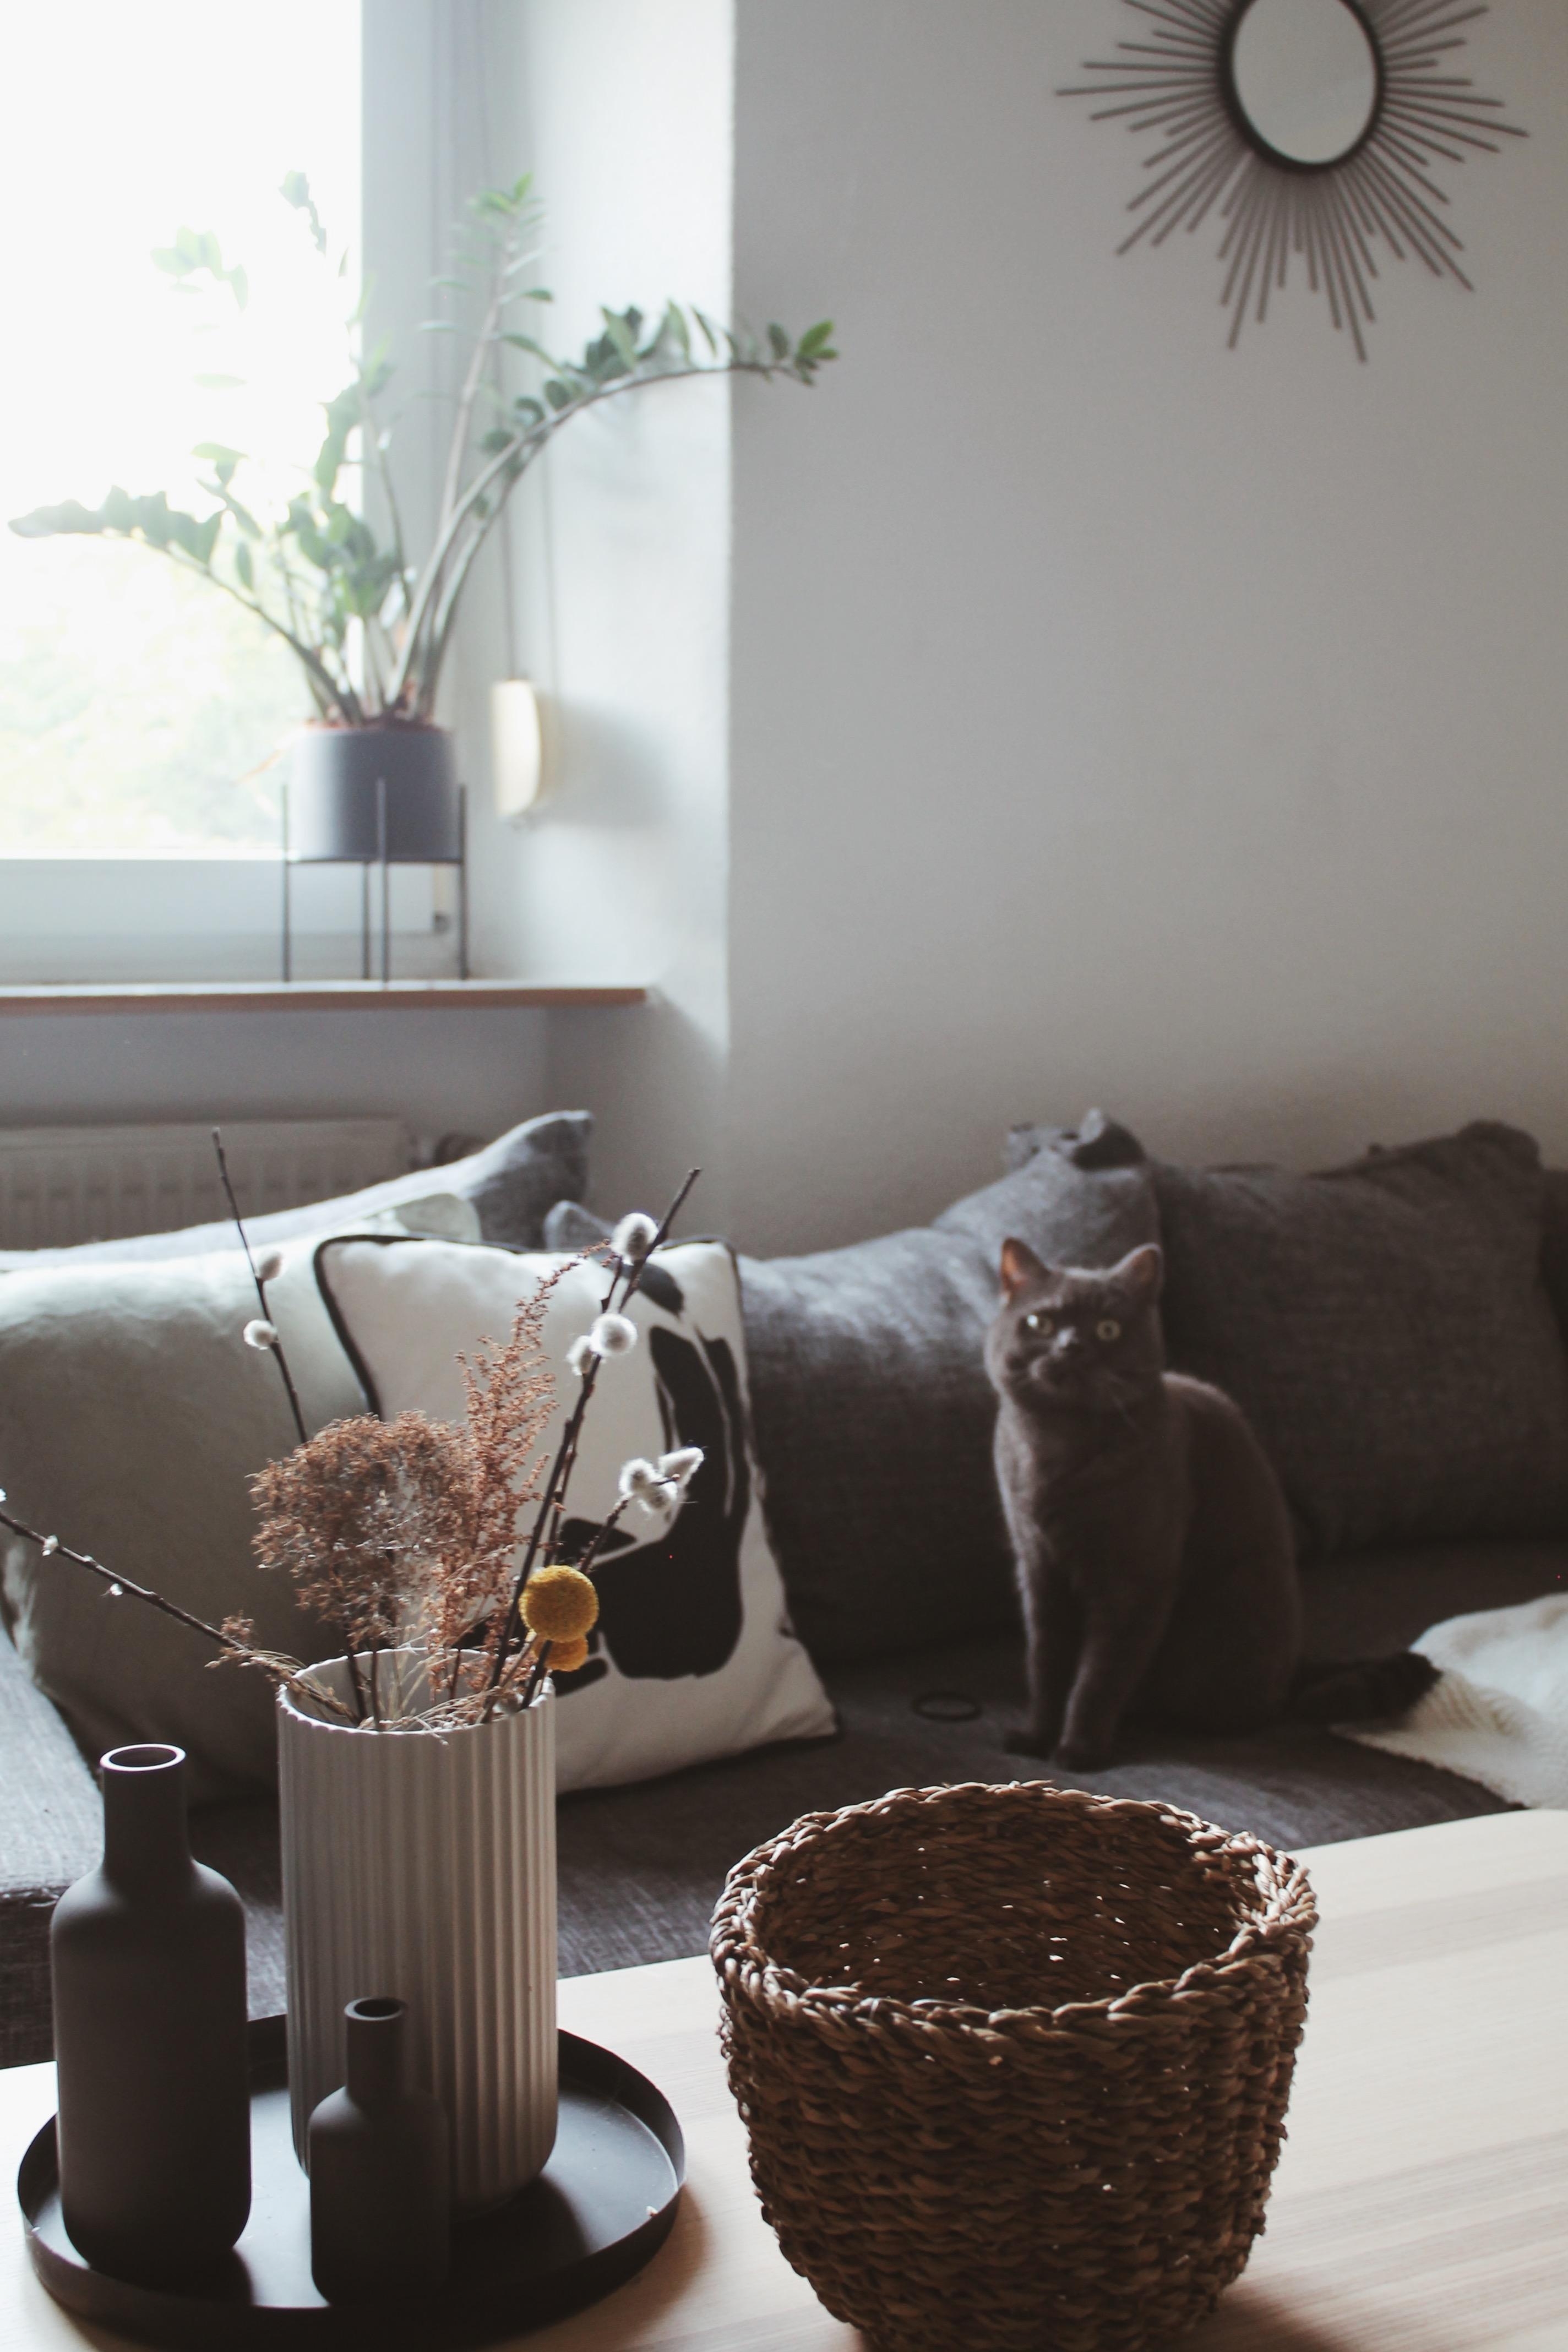 Neuen Nippes bestellt ☺️ #deko #dekoliebe #vasen #körbe #wohnzimmer #couchstyle